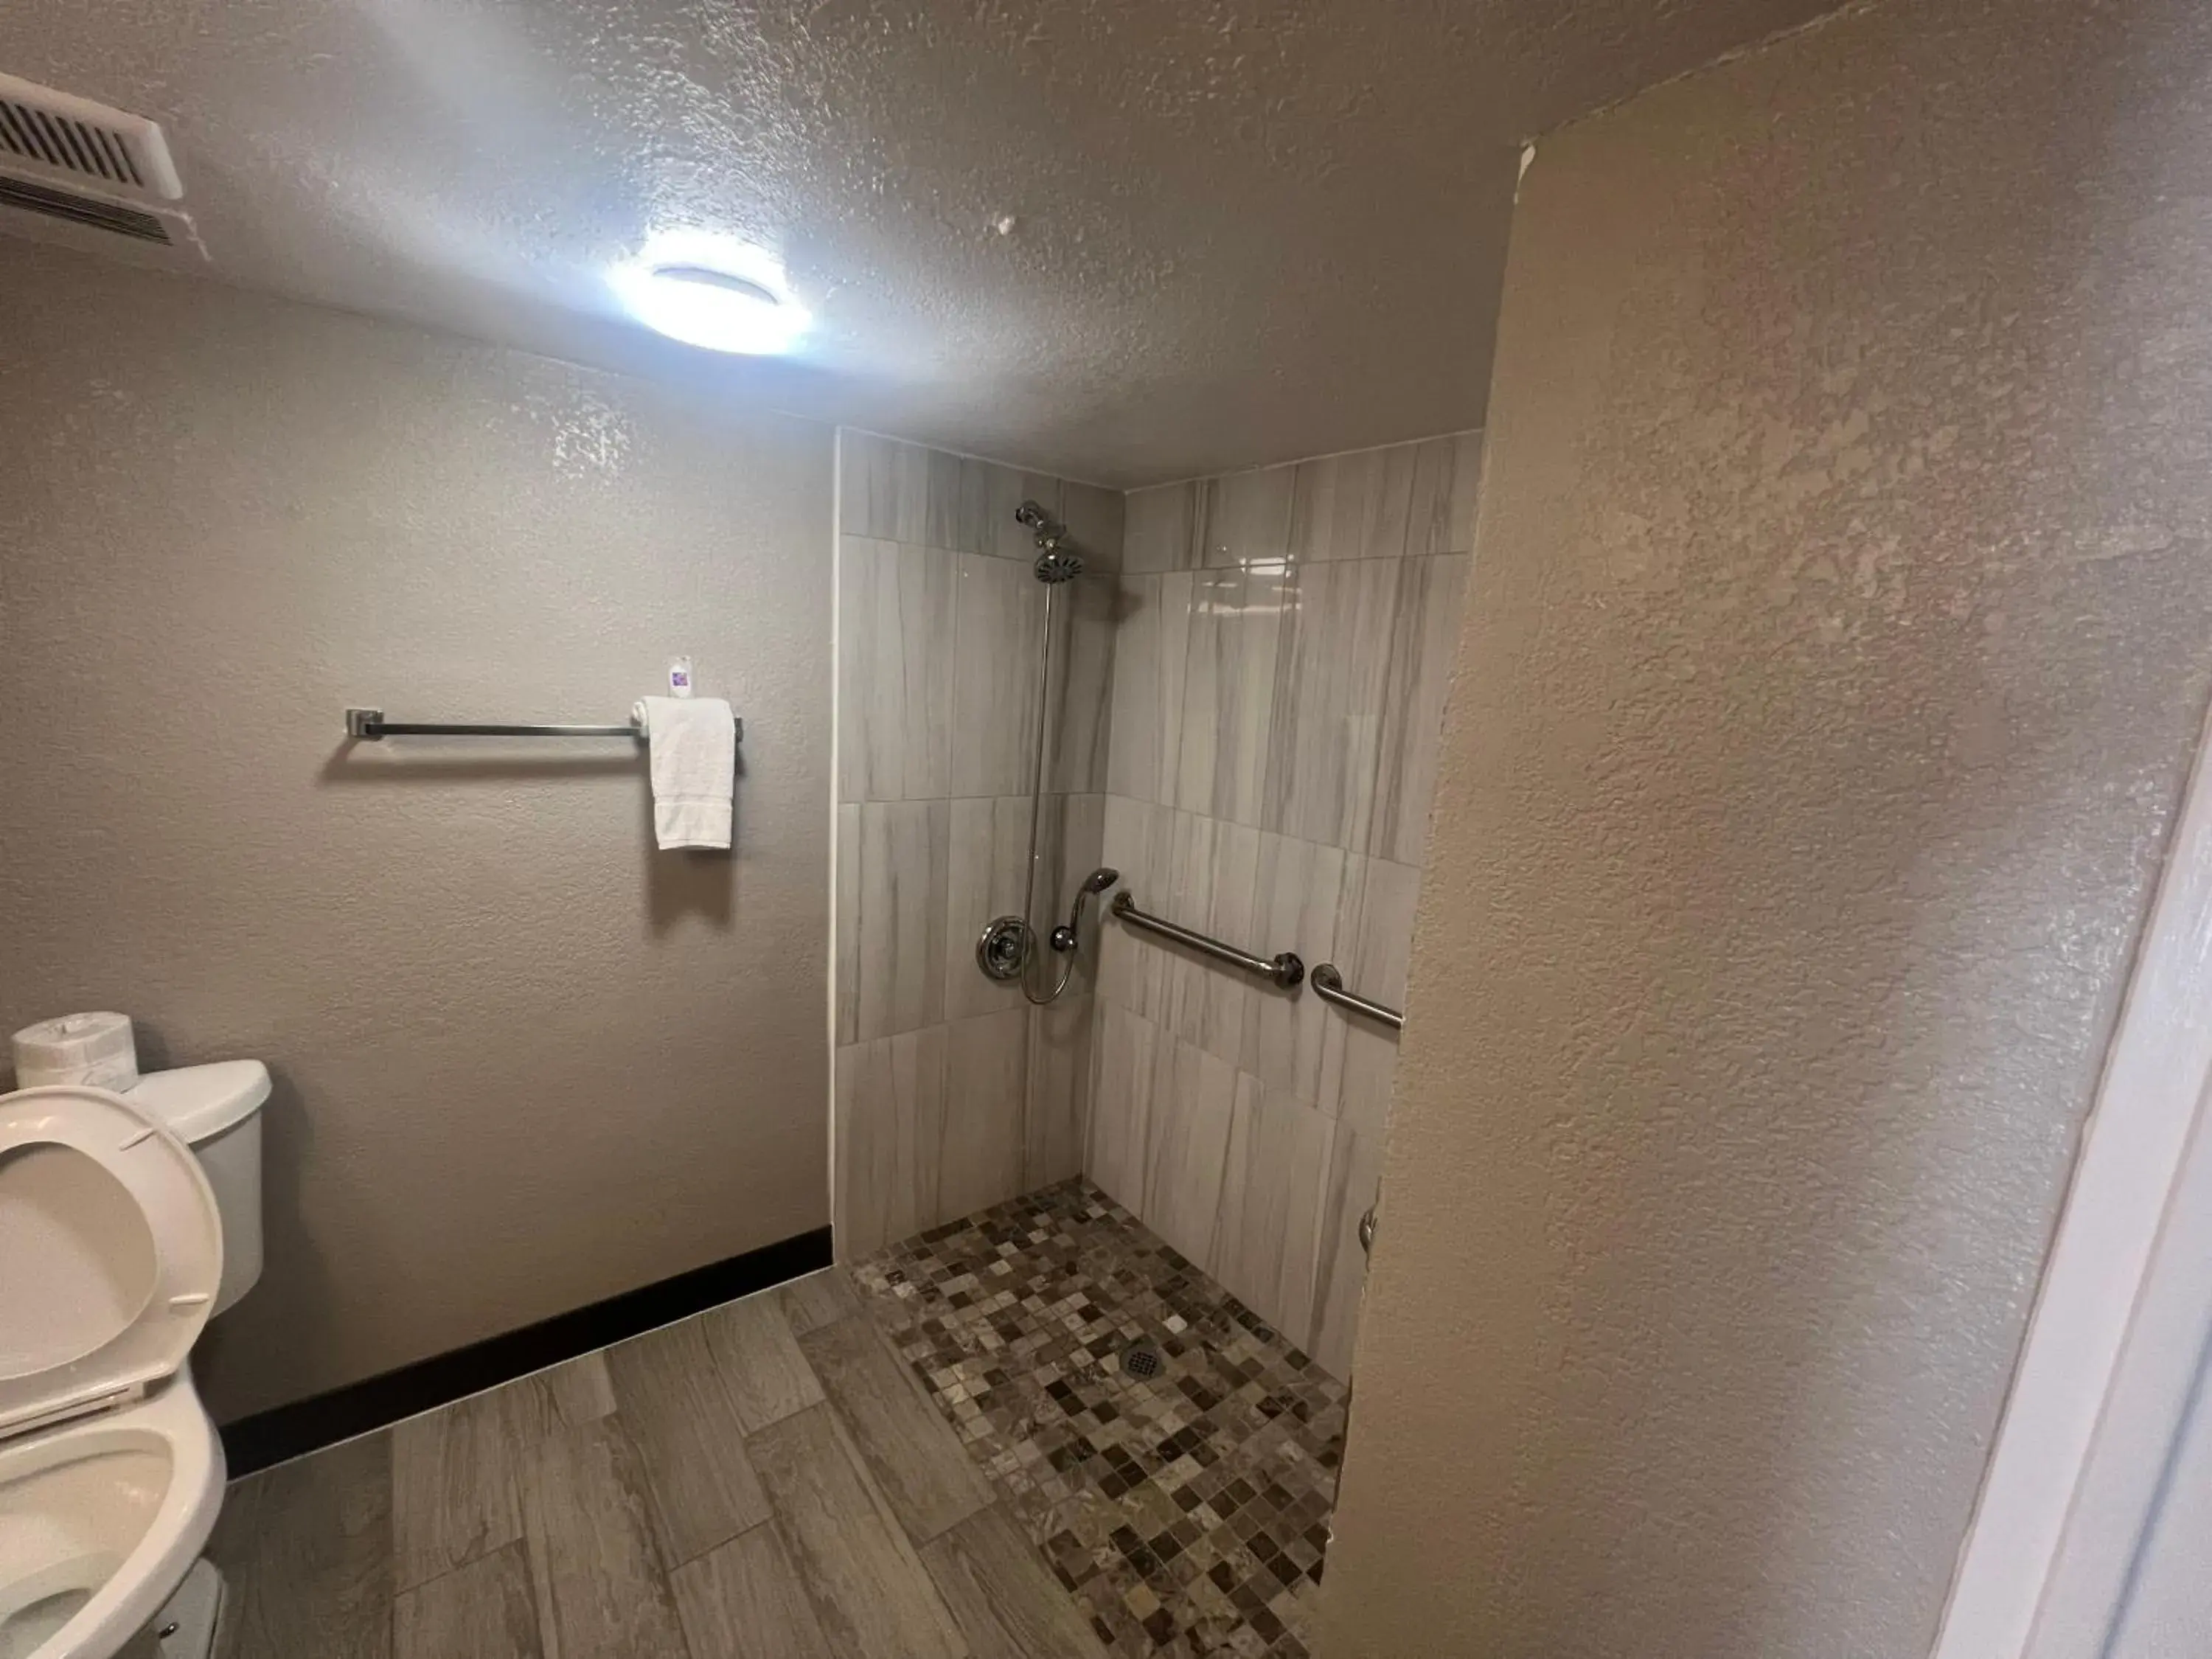 Shower, Bathroom in Motel 6 Glendale AZ